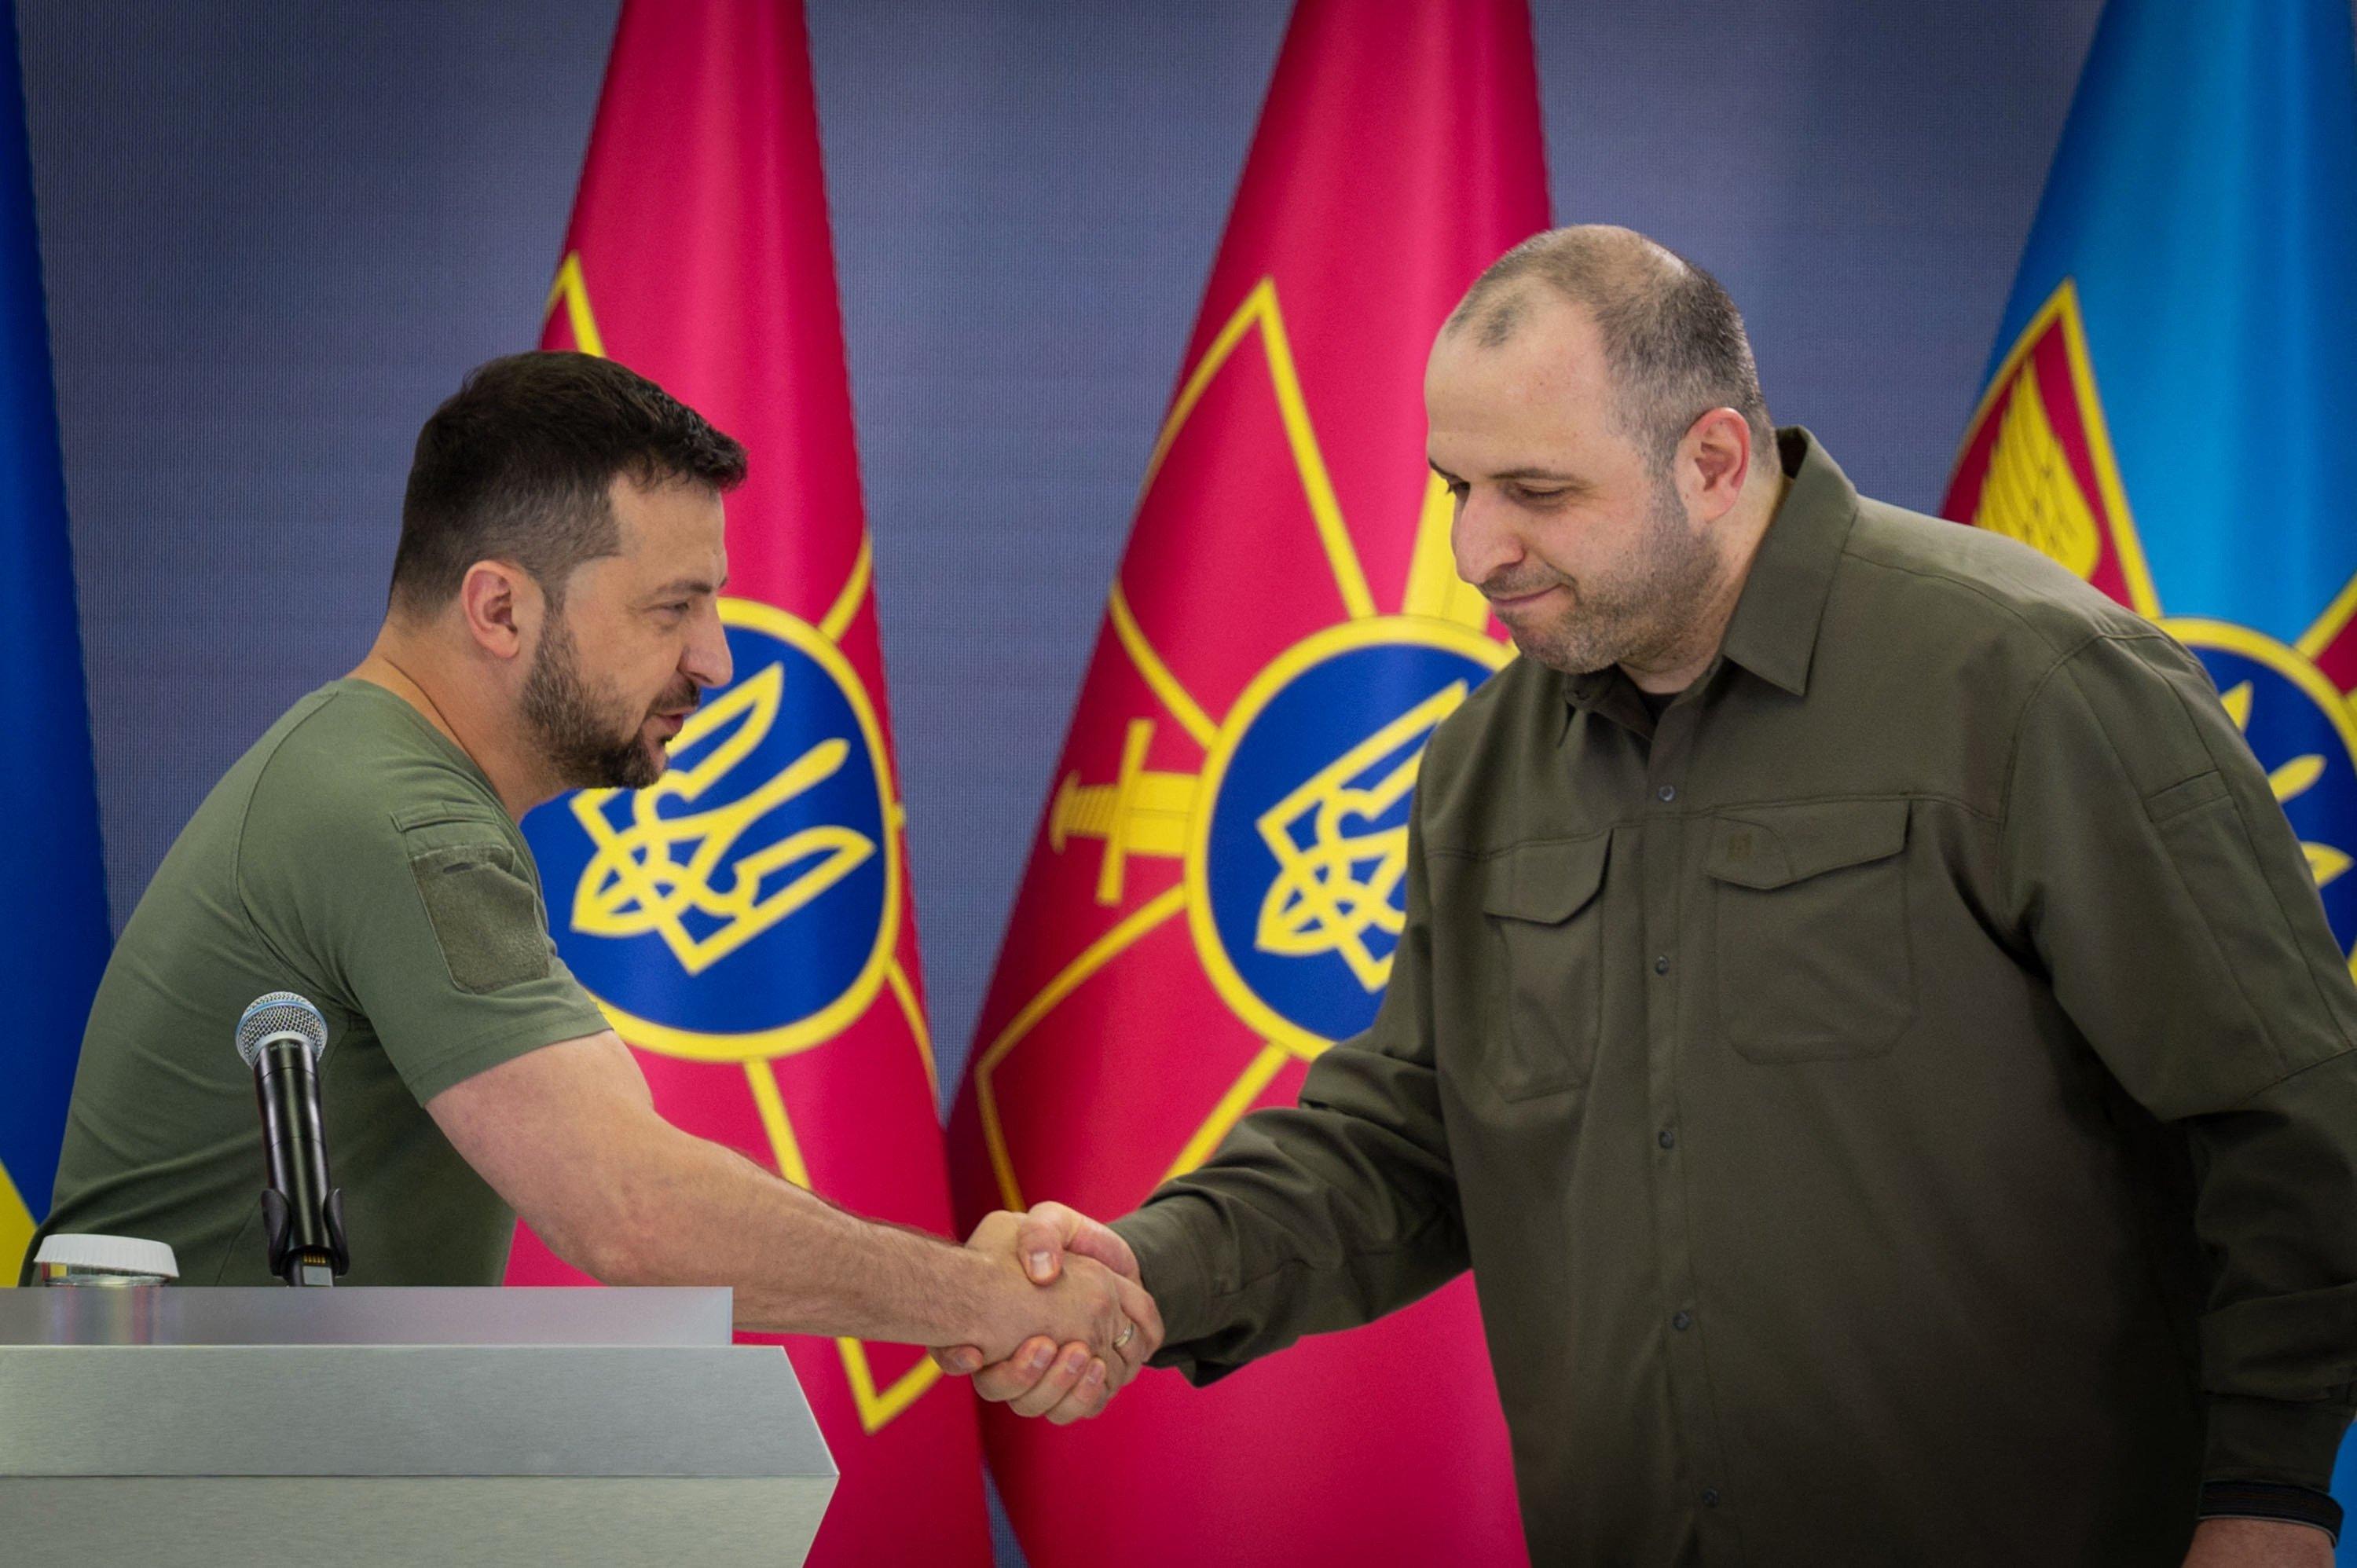 Prezydent Wołodymyr Zełenski ściska rękę ministra obrony Rustema Umarowa na podium z flagami